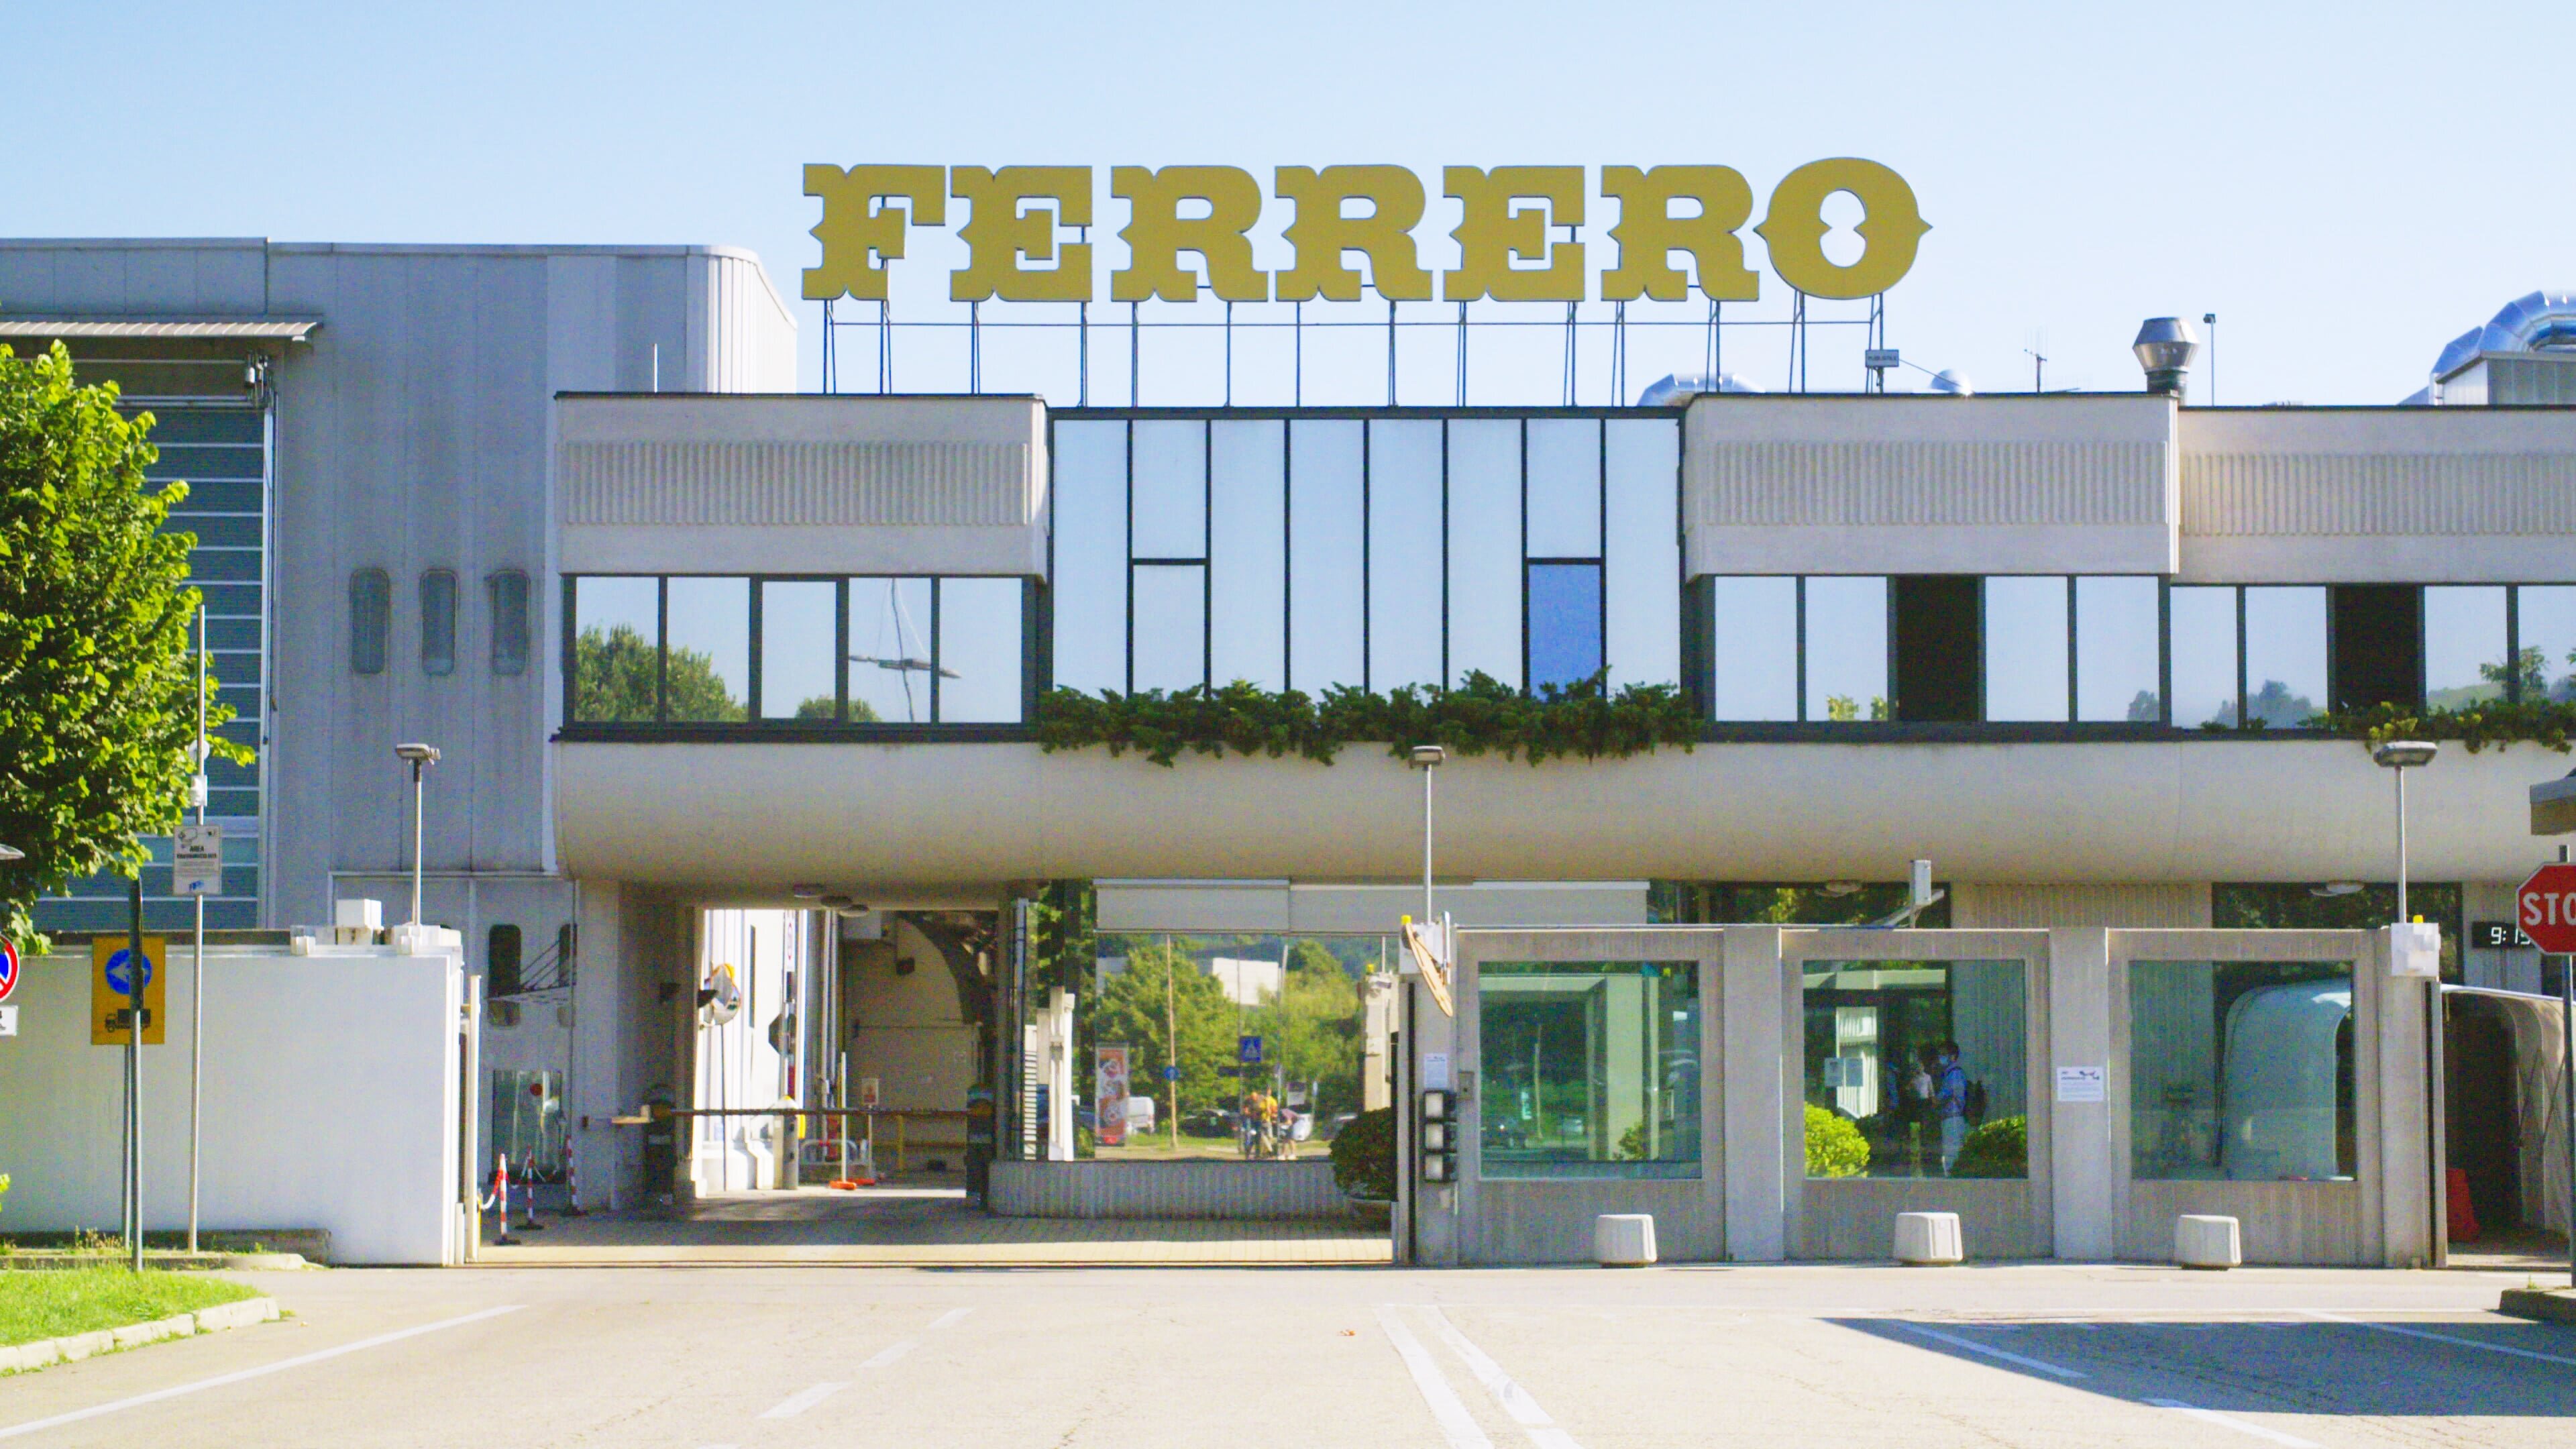 ZDFbesseresser: Die Tricks von Haribo, Ferrero & Co.